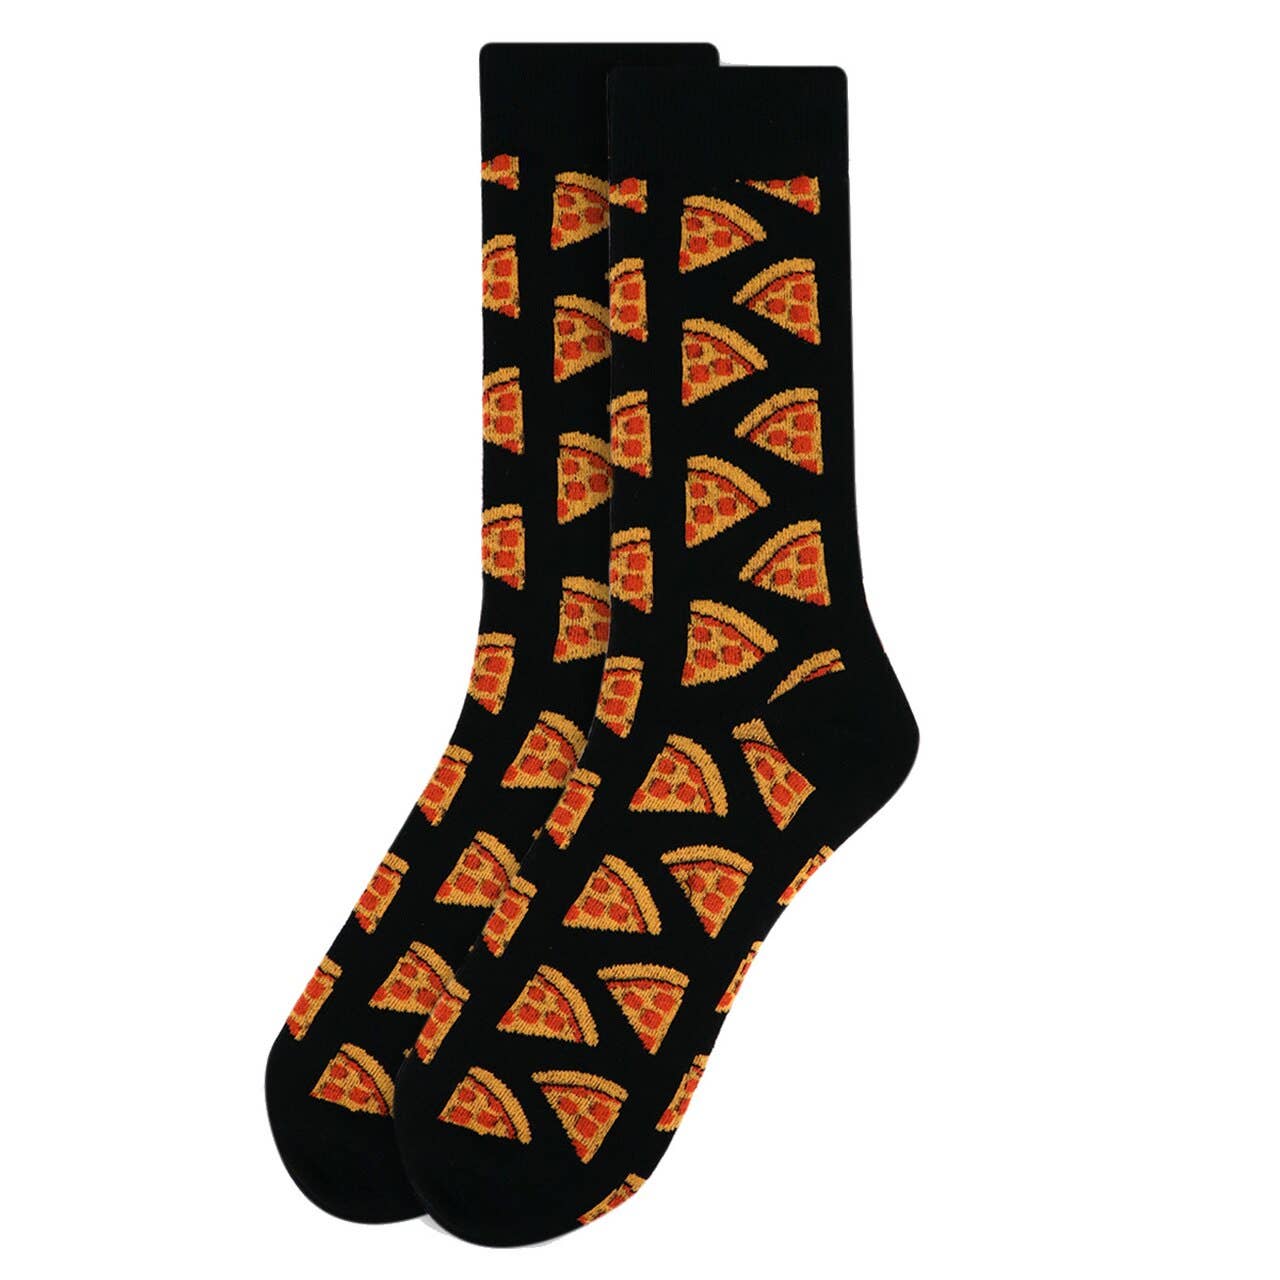 Socks: Pepperoni Pizza Novelty Socks for Men